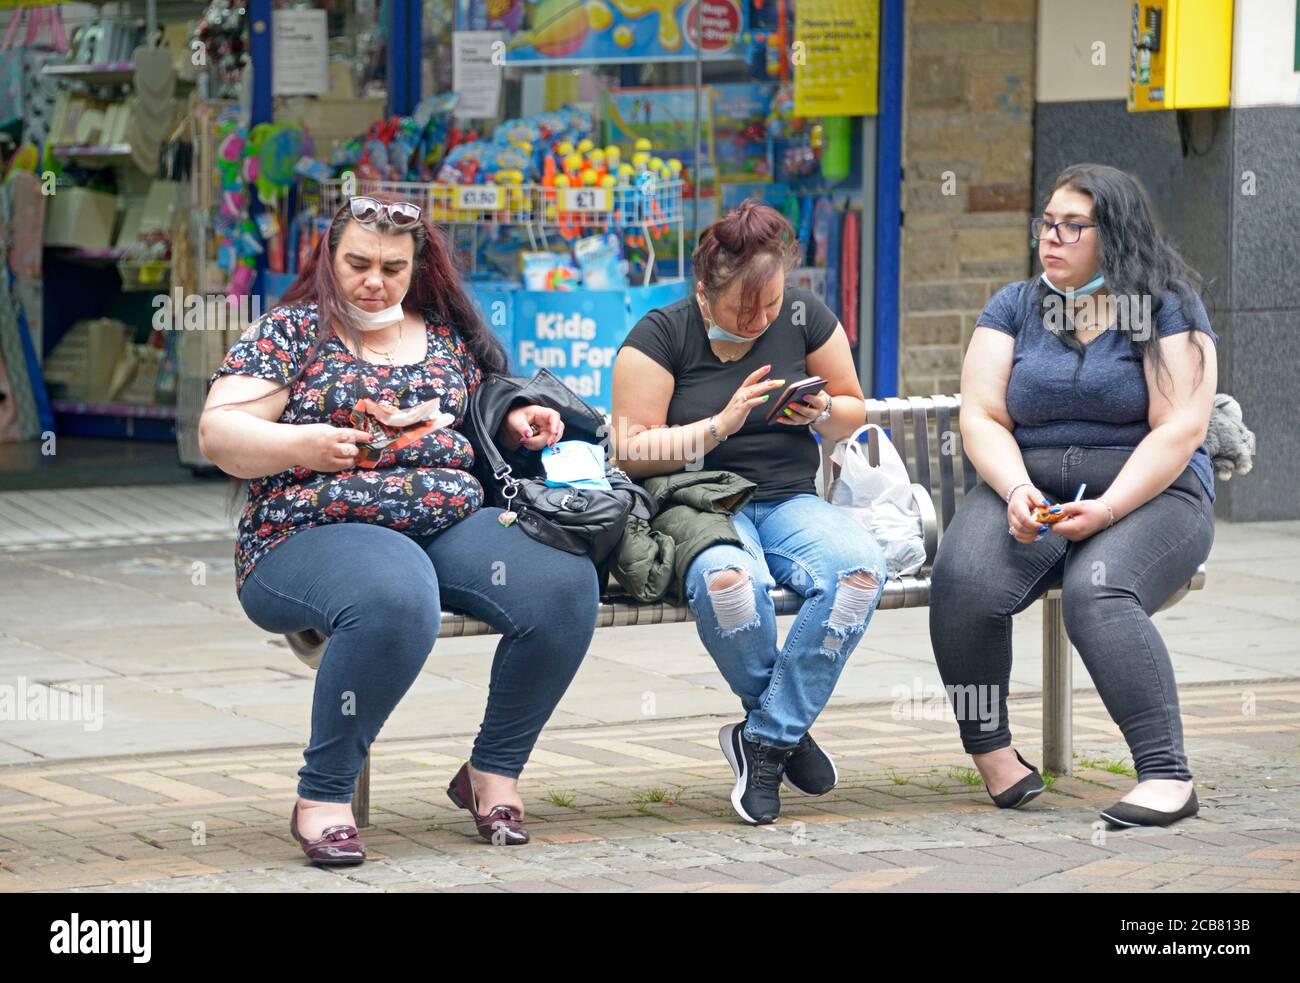 tres-mujeres-obesas-sentados-comprobando-los-telefonos-2cb813b.jpg